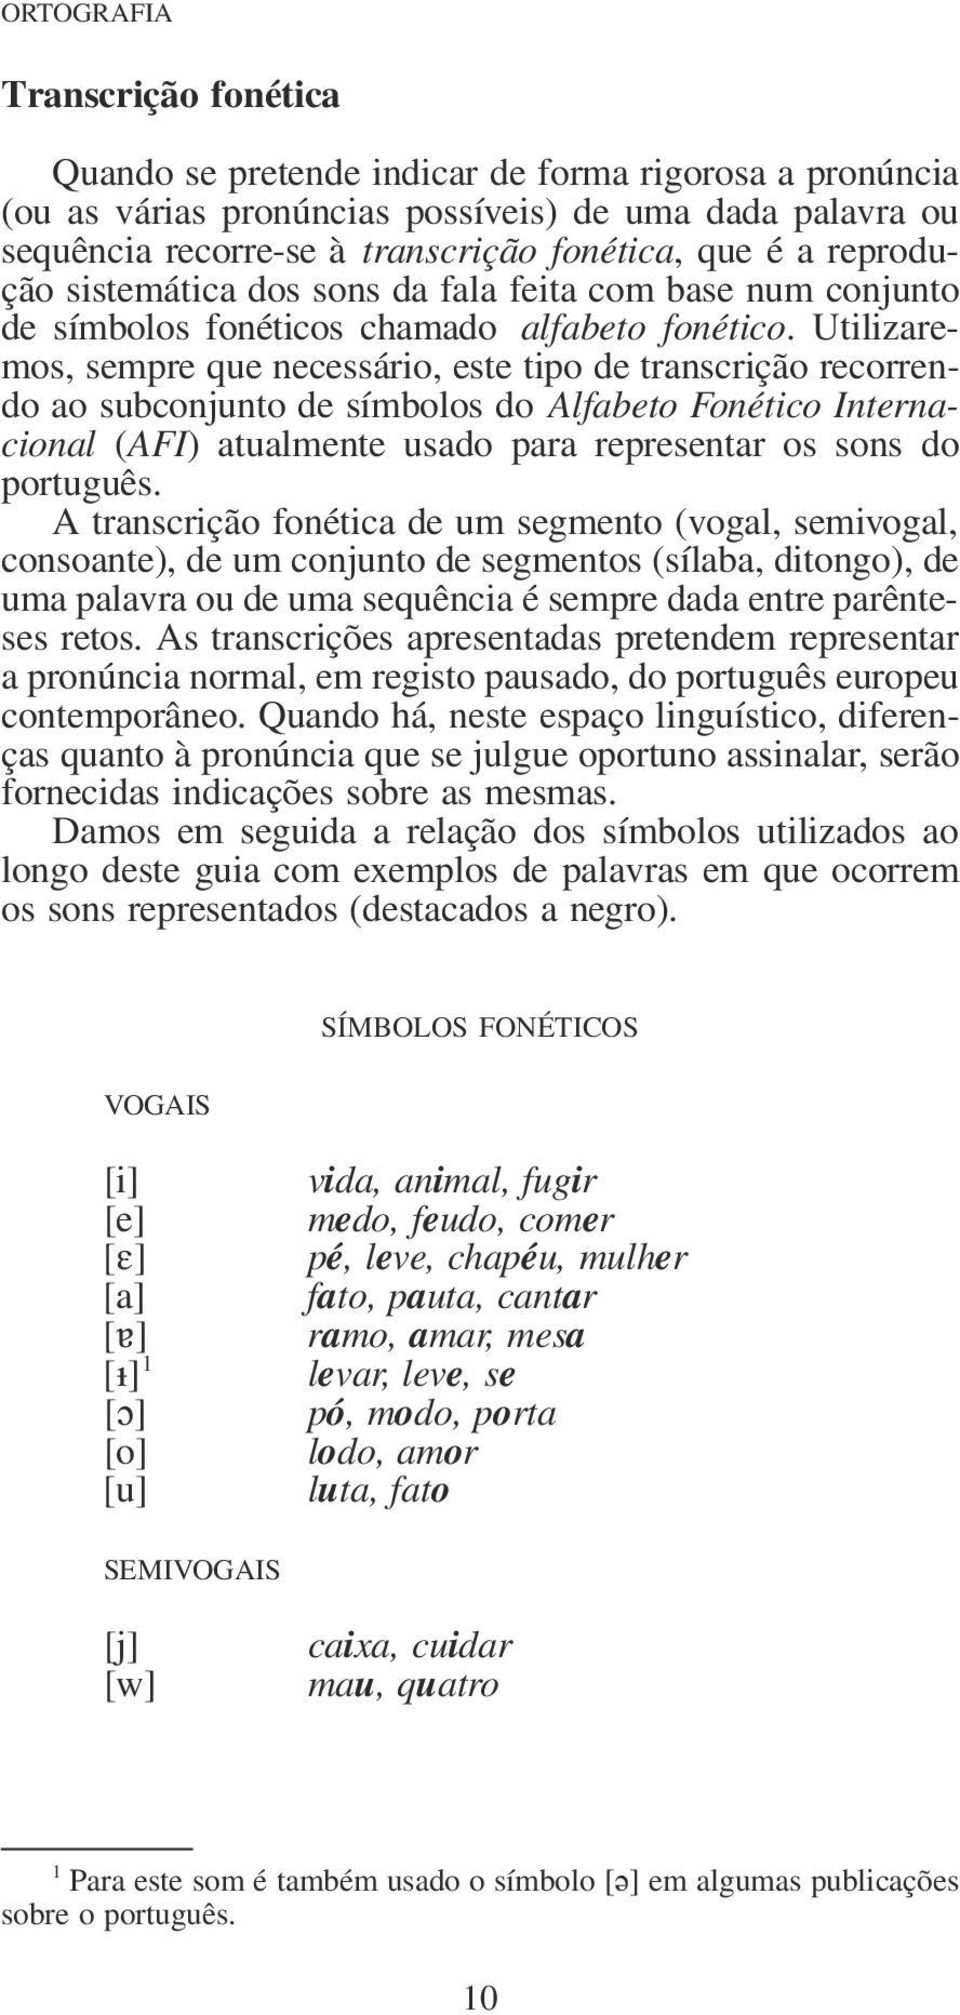 Utilizaremos, sempre que necessário, este tipo de transcrição recorrendo ao subconjunto de símbolos do Alfabeto Fonético Internacional (AFI) atualmente usado para representar os sons do português.